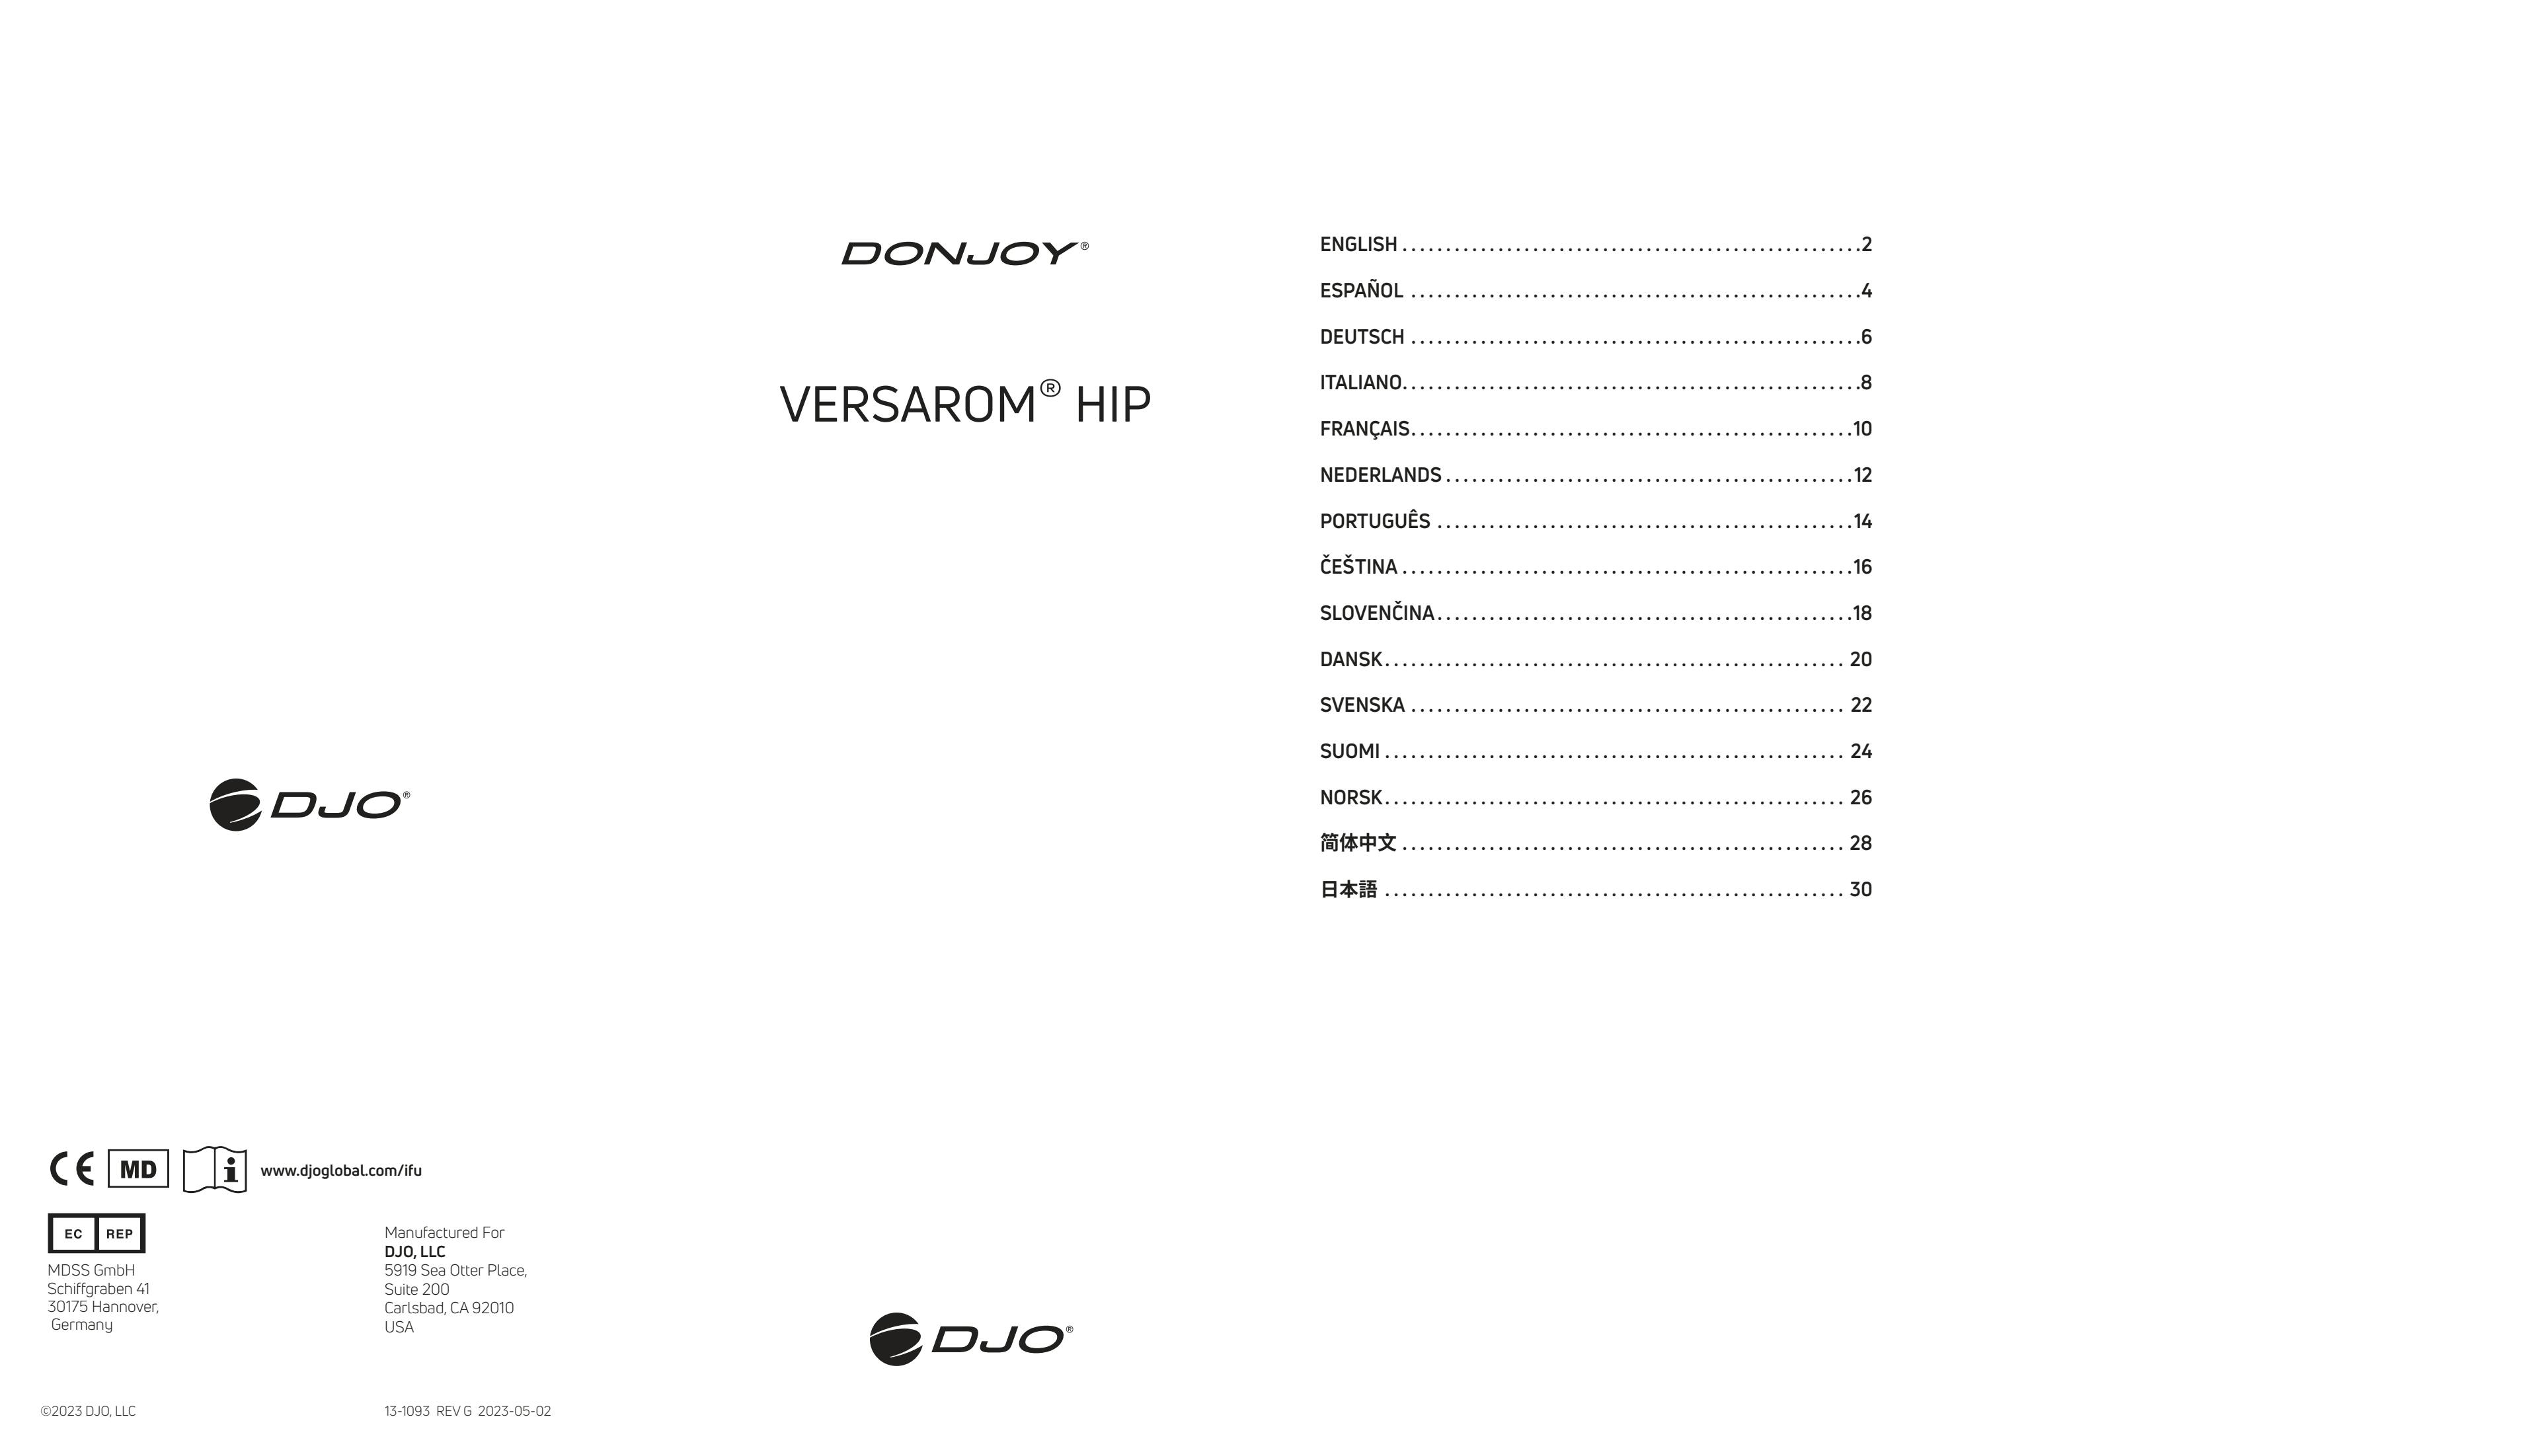 Gebrauchsanleitung_DONJOY_VersaROM-Hip_13-1093 REVG 2023-05-02.pdf